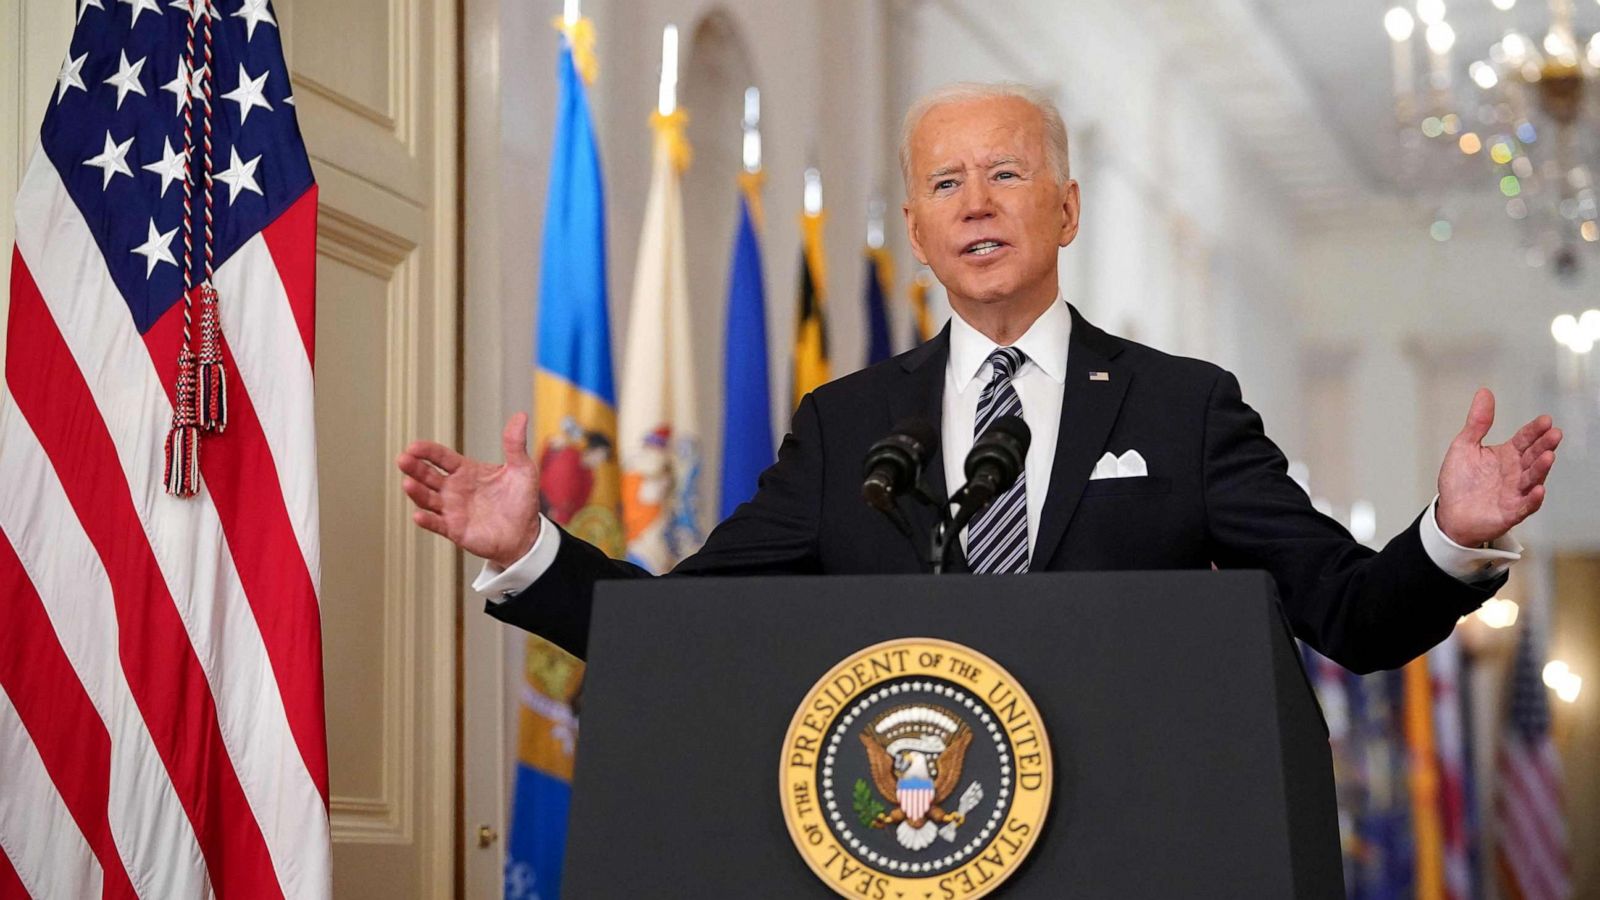 Joe Biden giving speech